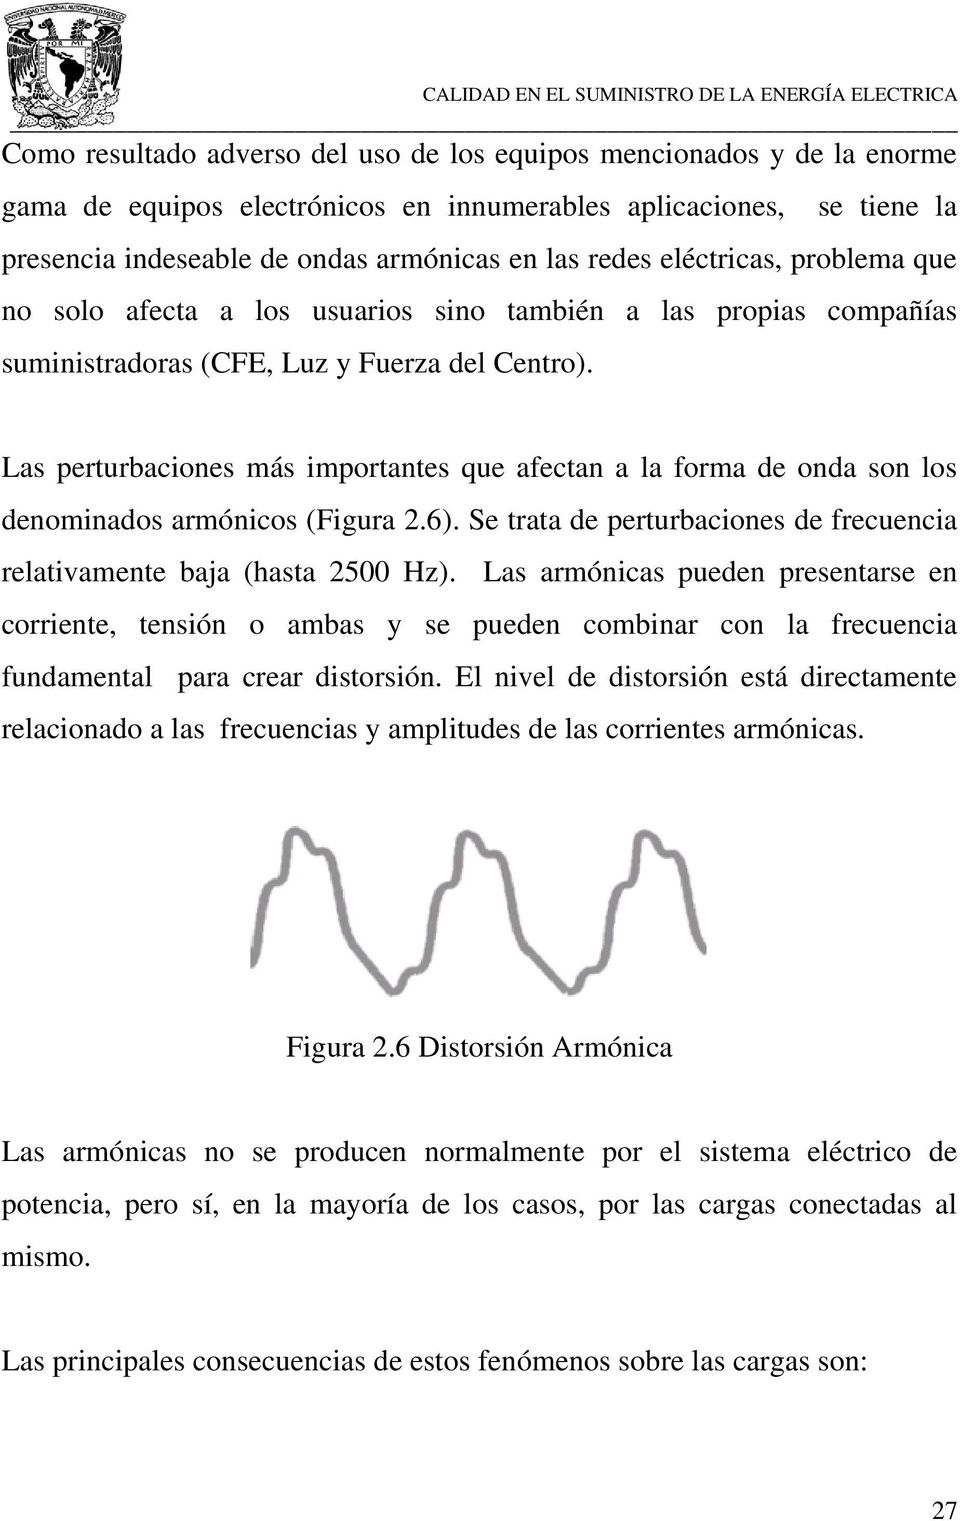 Las perturbaciones más importantes que afectan a la forma de onda son los denominados armónicos (Figura 2.6). Se trata de perturbaciones de frecuencia relativamente baja (hasta 2500 Hz).